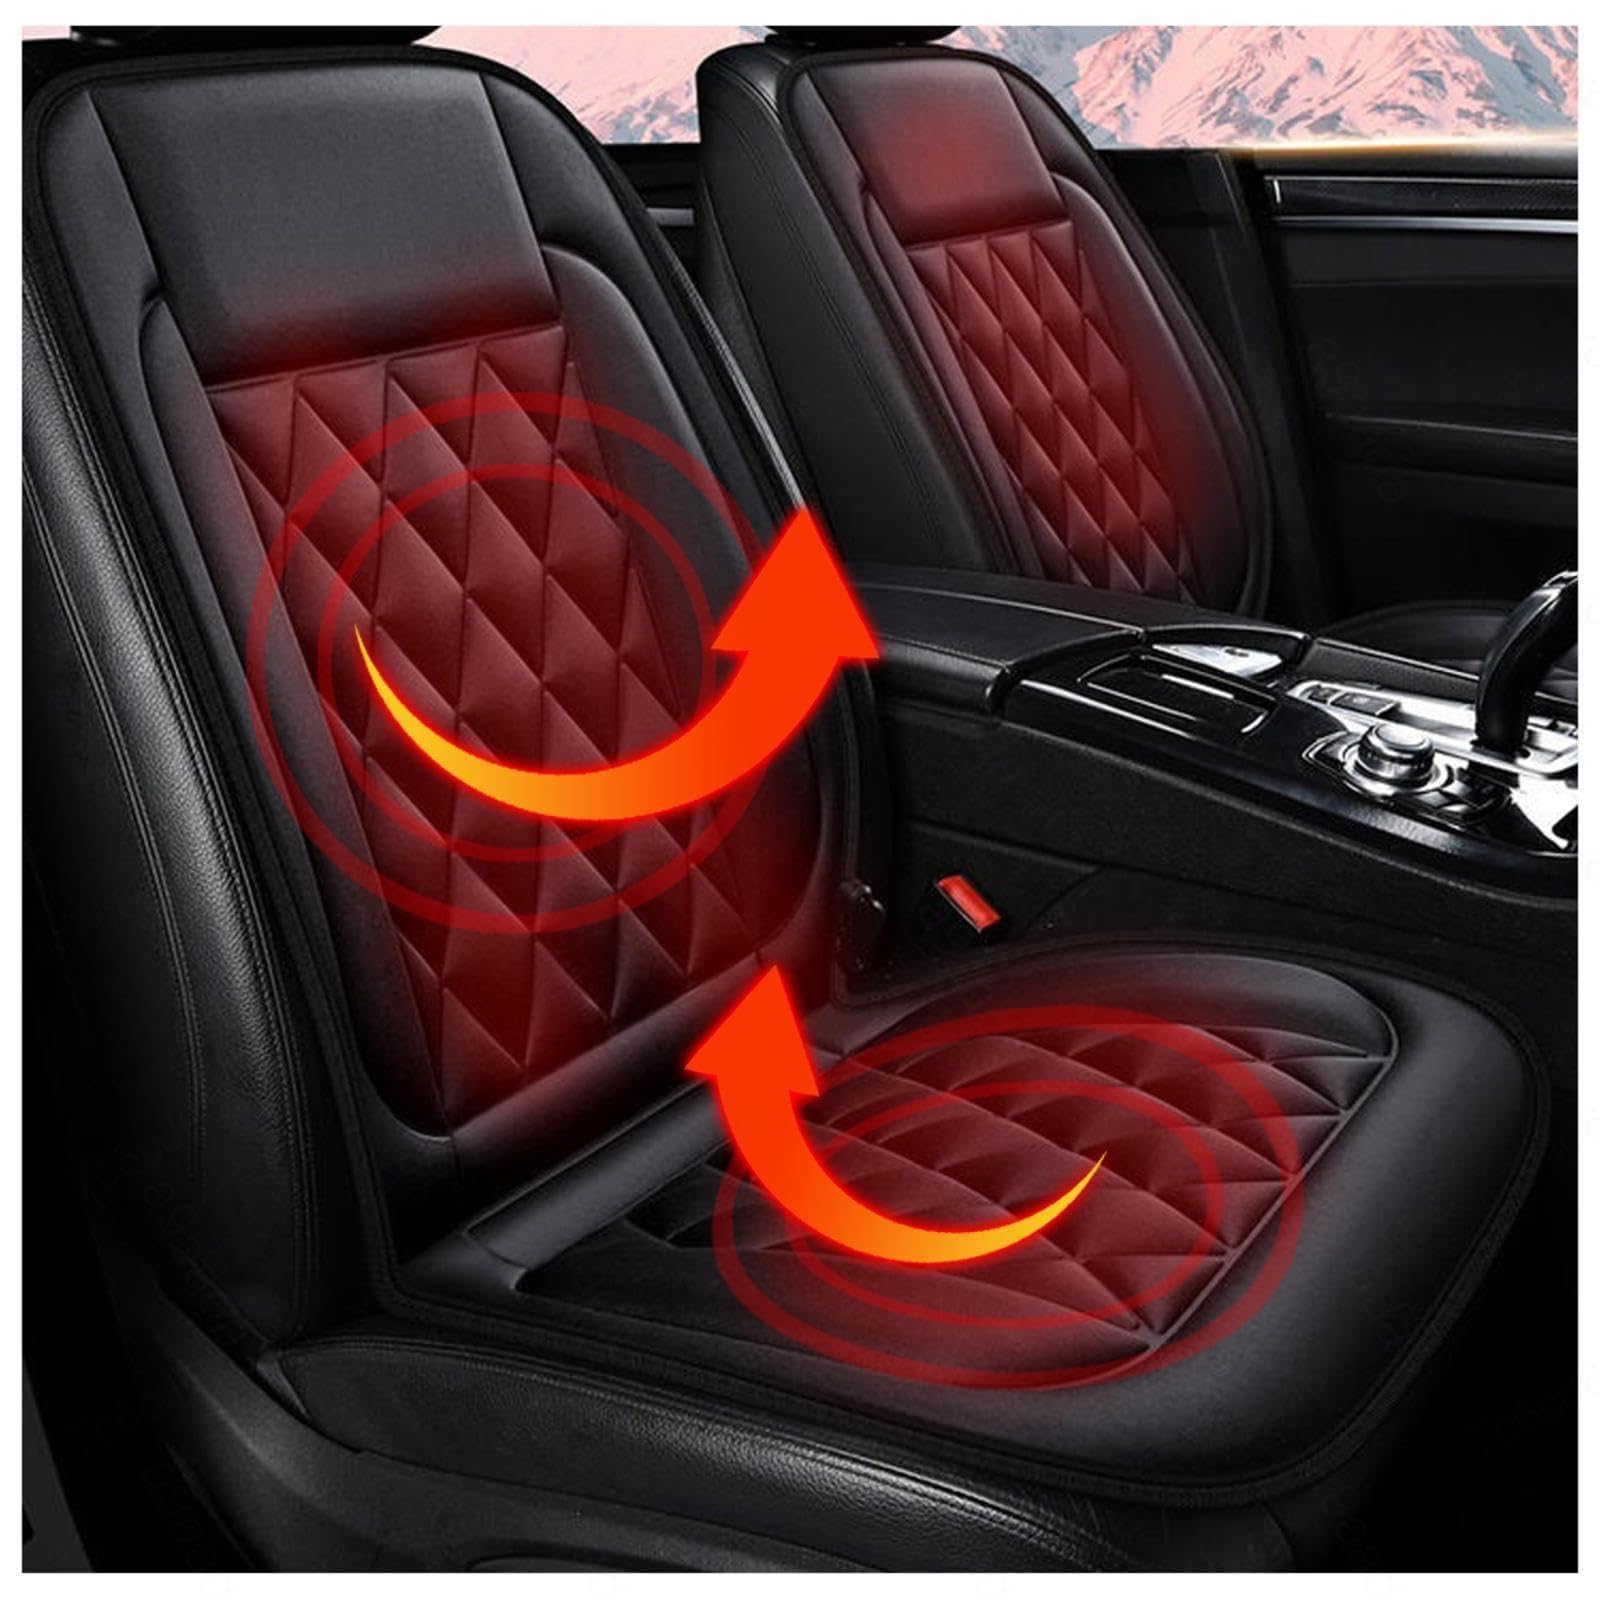 NURII Sitzheizung Auto Auflage, Intelligente Steuerung für Schnelles Aufheizen Car Seat Protector rutschfest Universal Auto Sitzaufleger für LKW,B-1Packung von NURII